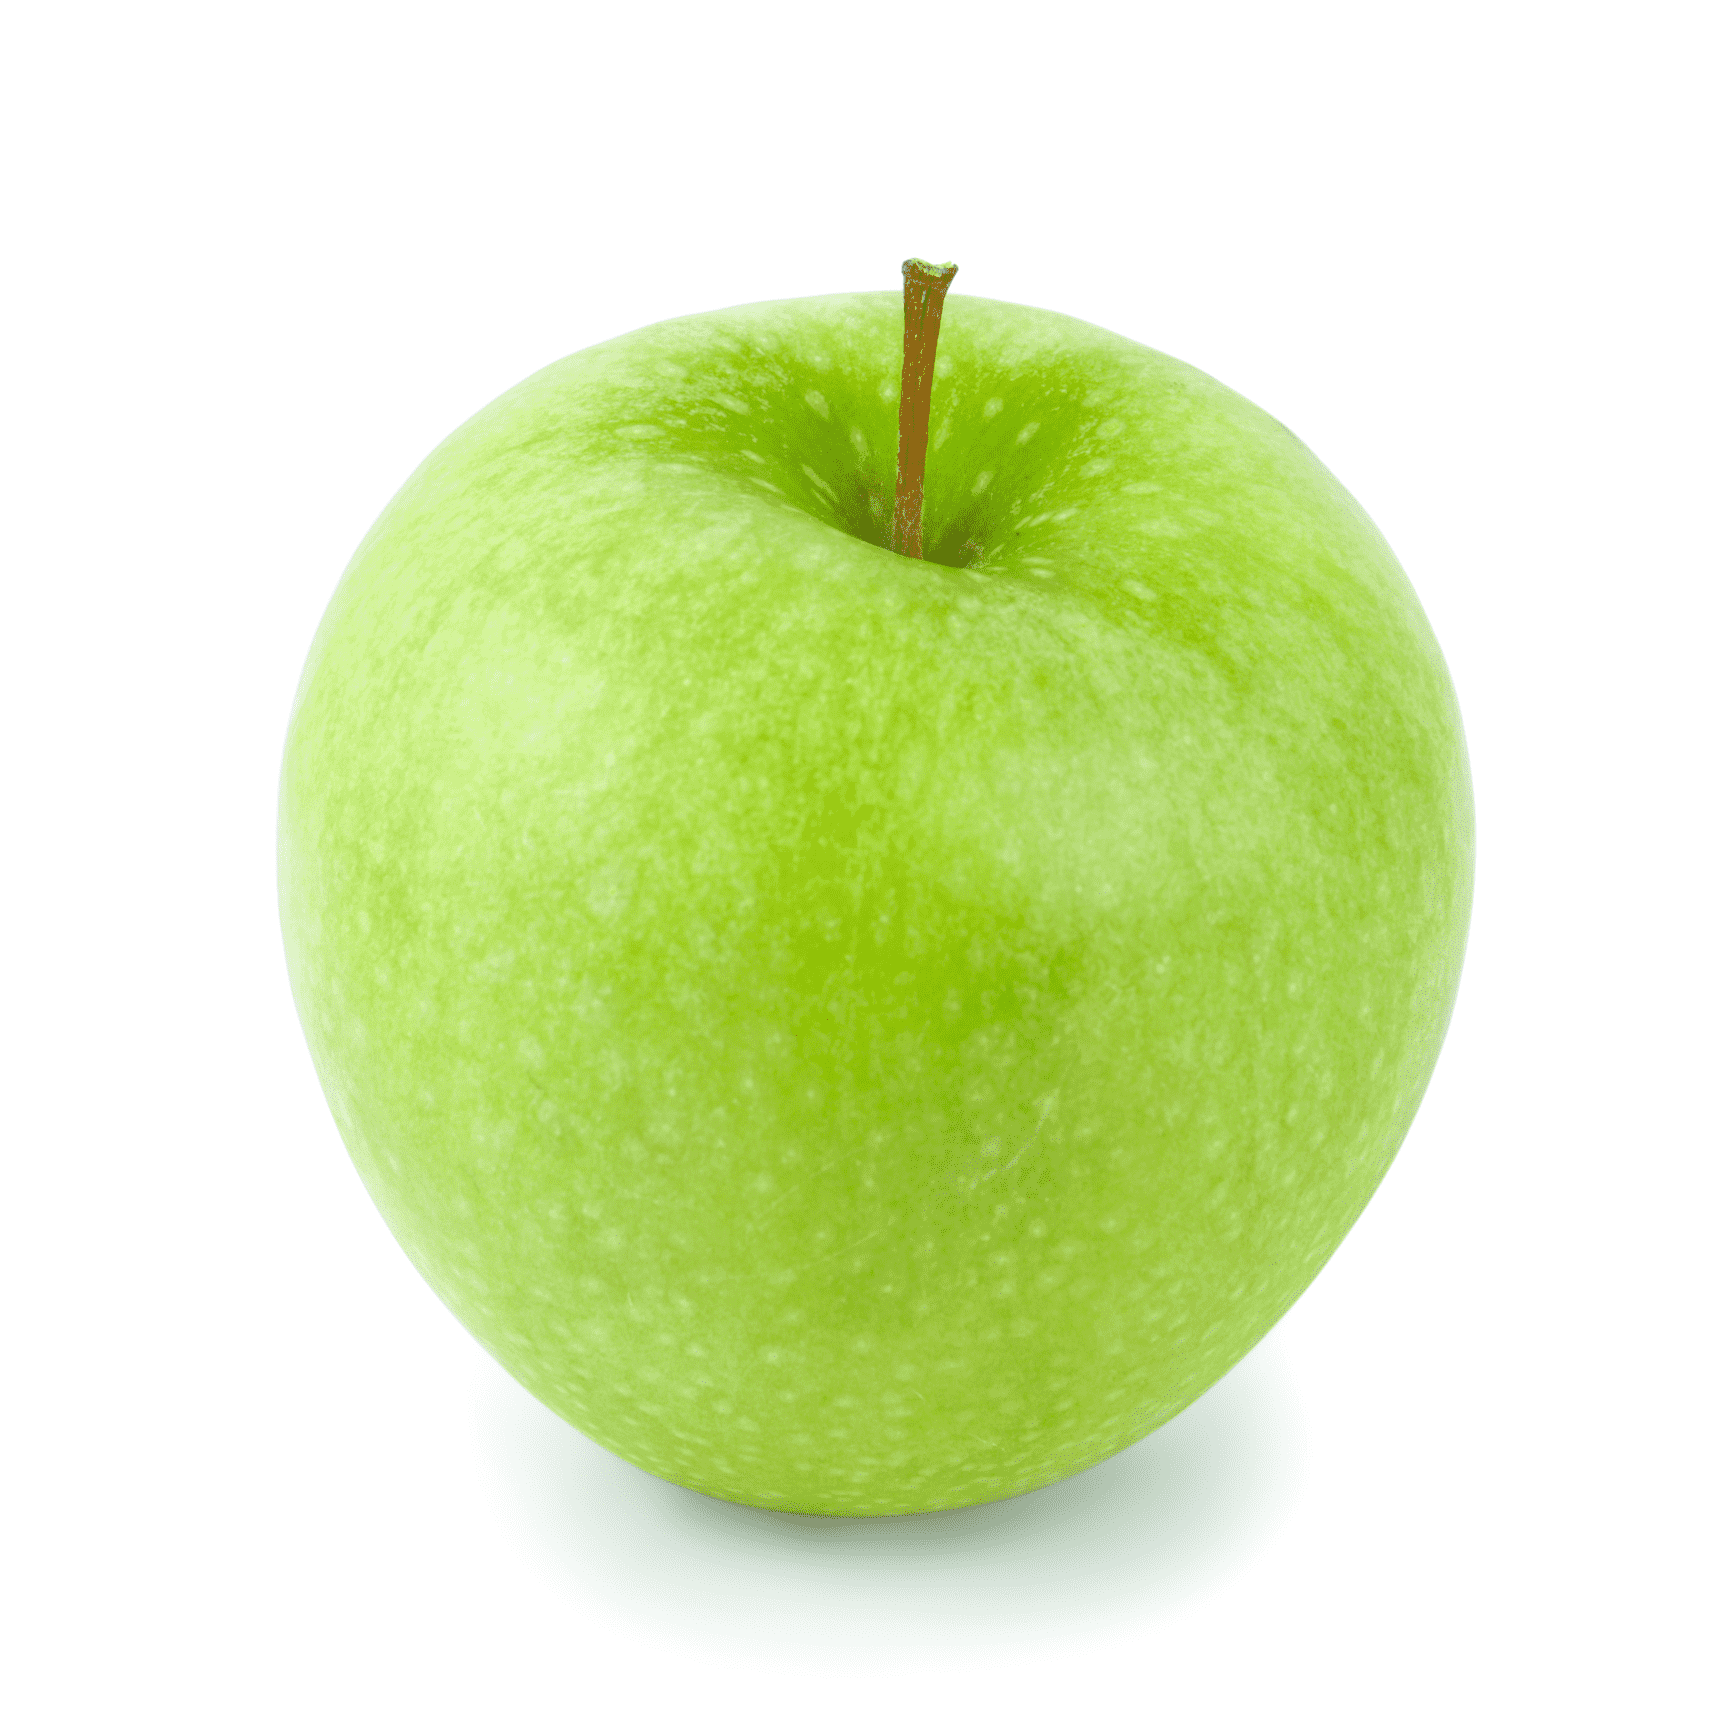 Äpple Granny Smith ca180-190g/st, pris beräknad per styck Nederländerna